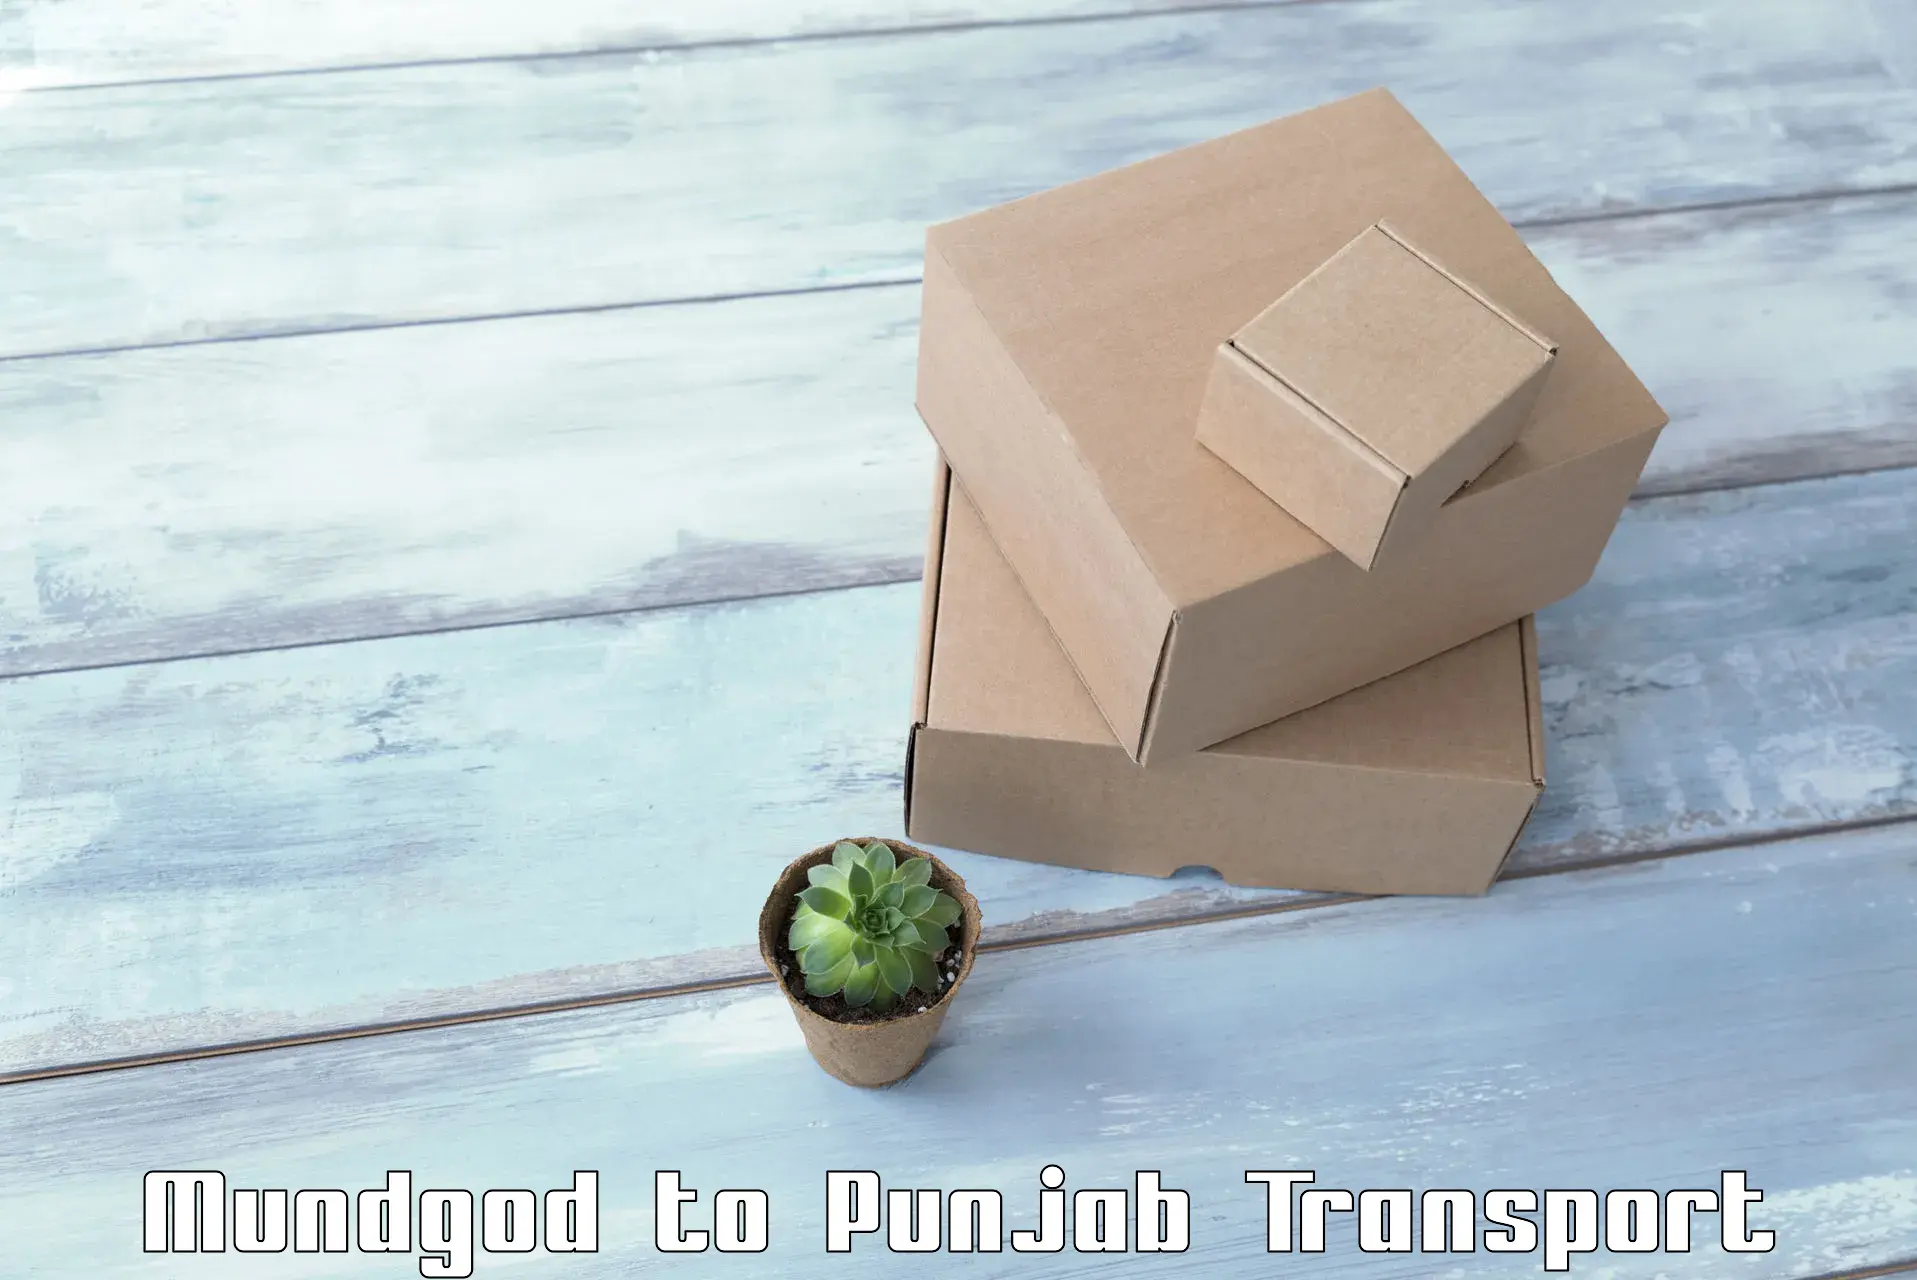 Domestic goods transportation services Mundgod to Rupnagar